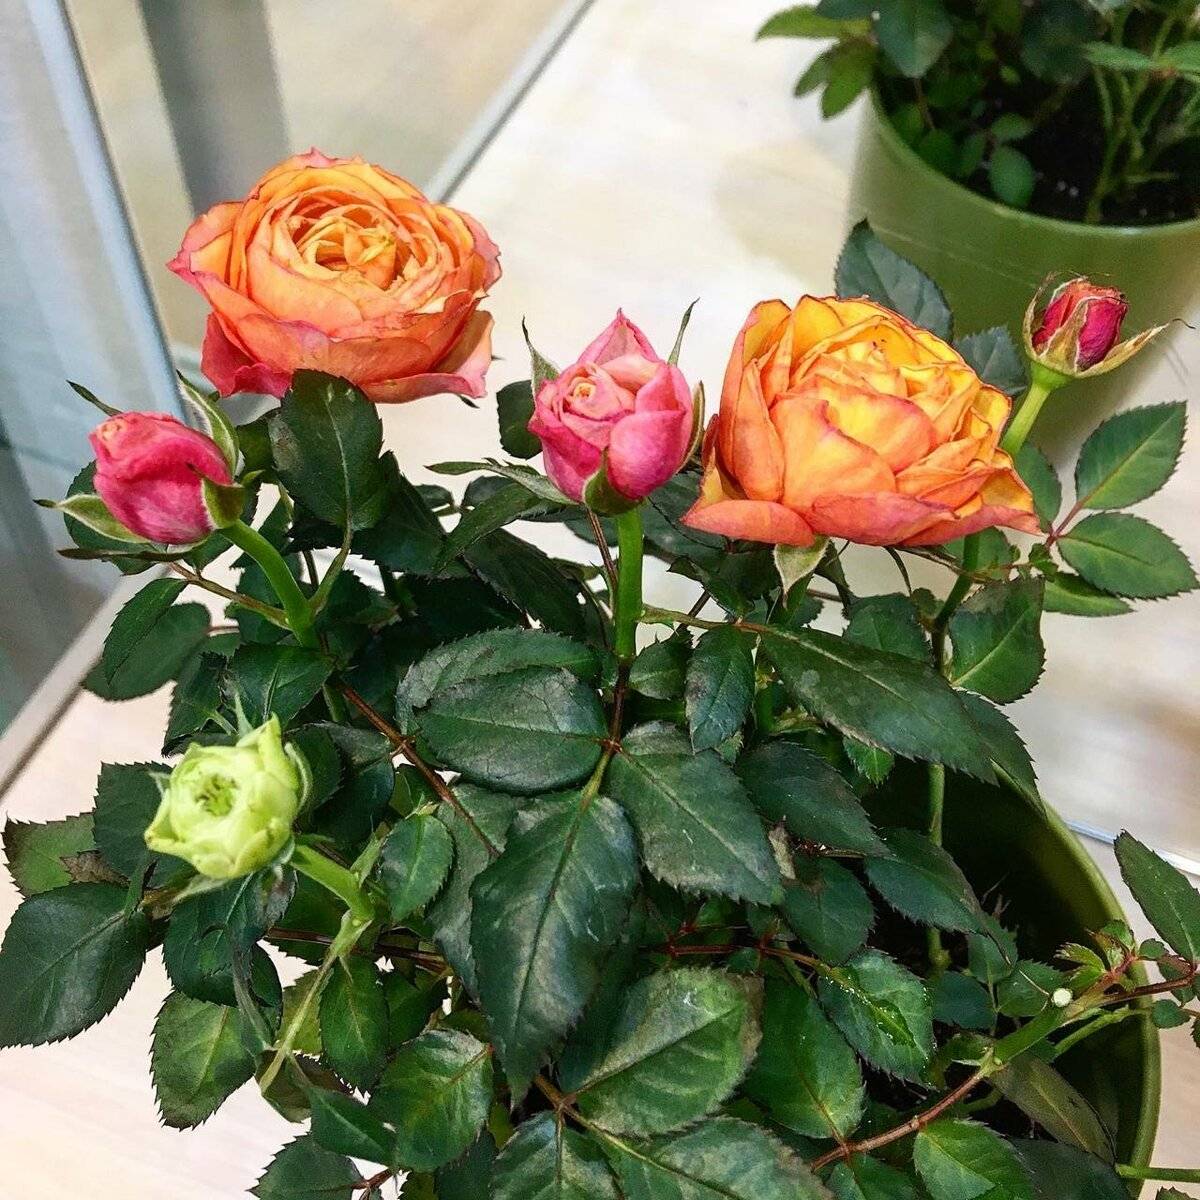 Пересадка комнатной розы после покупки: выбор грунта, размер цветочного горшка, дренаж, необходимые инструменты, техника выполнения работы и советы цветоводов